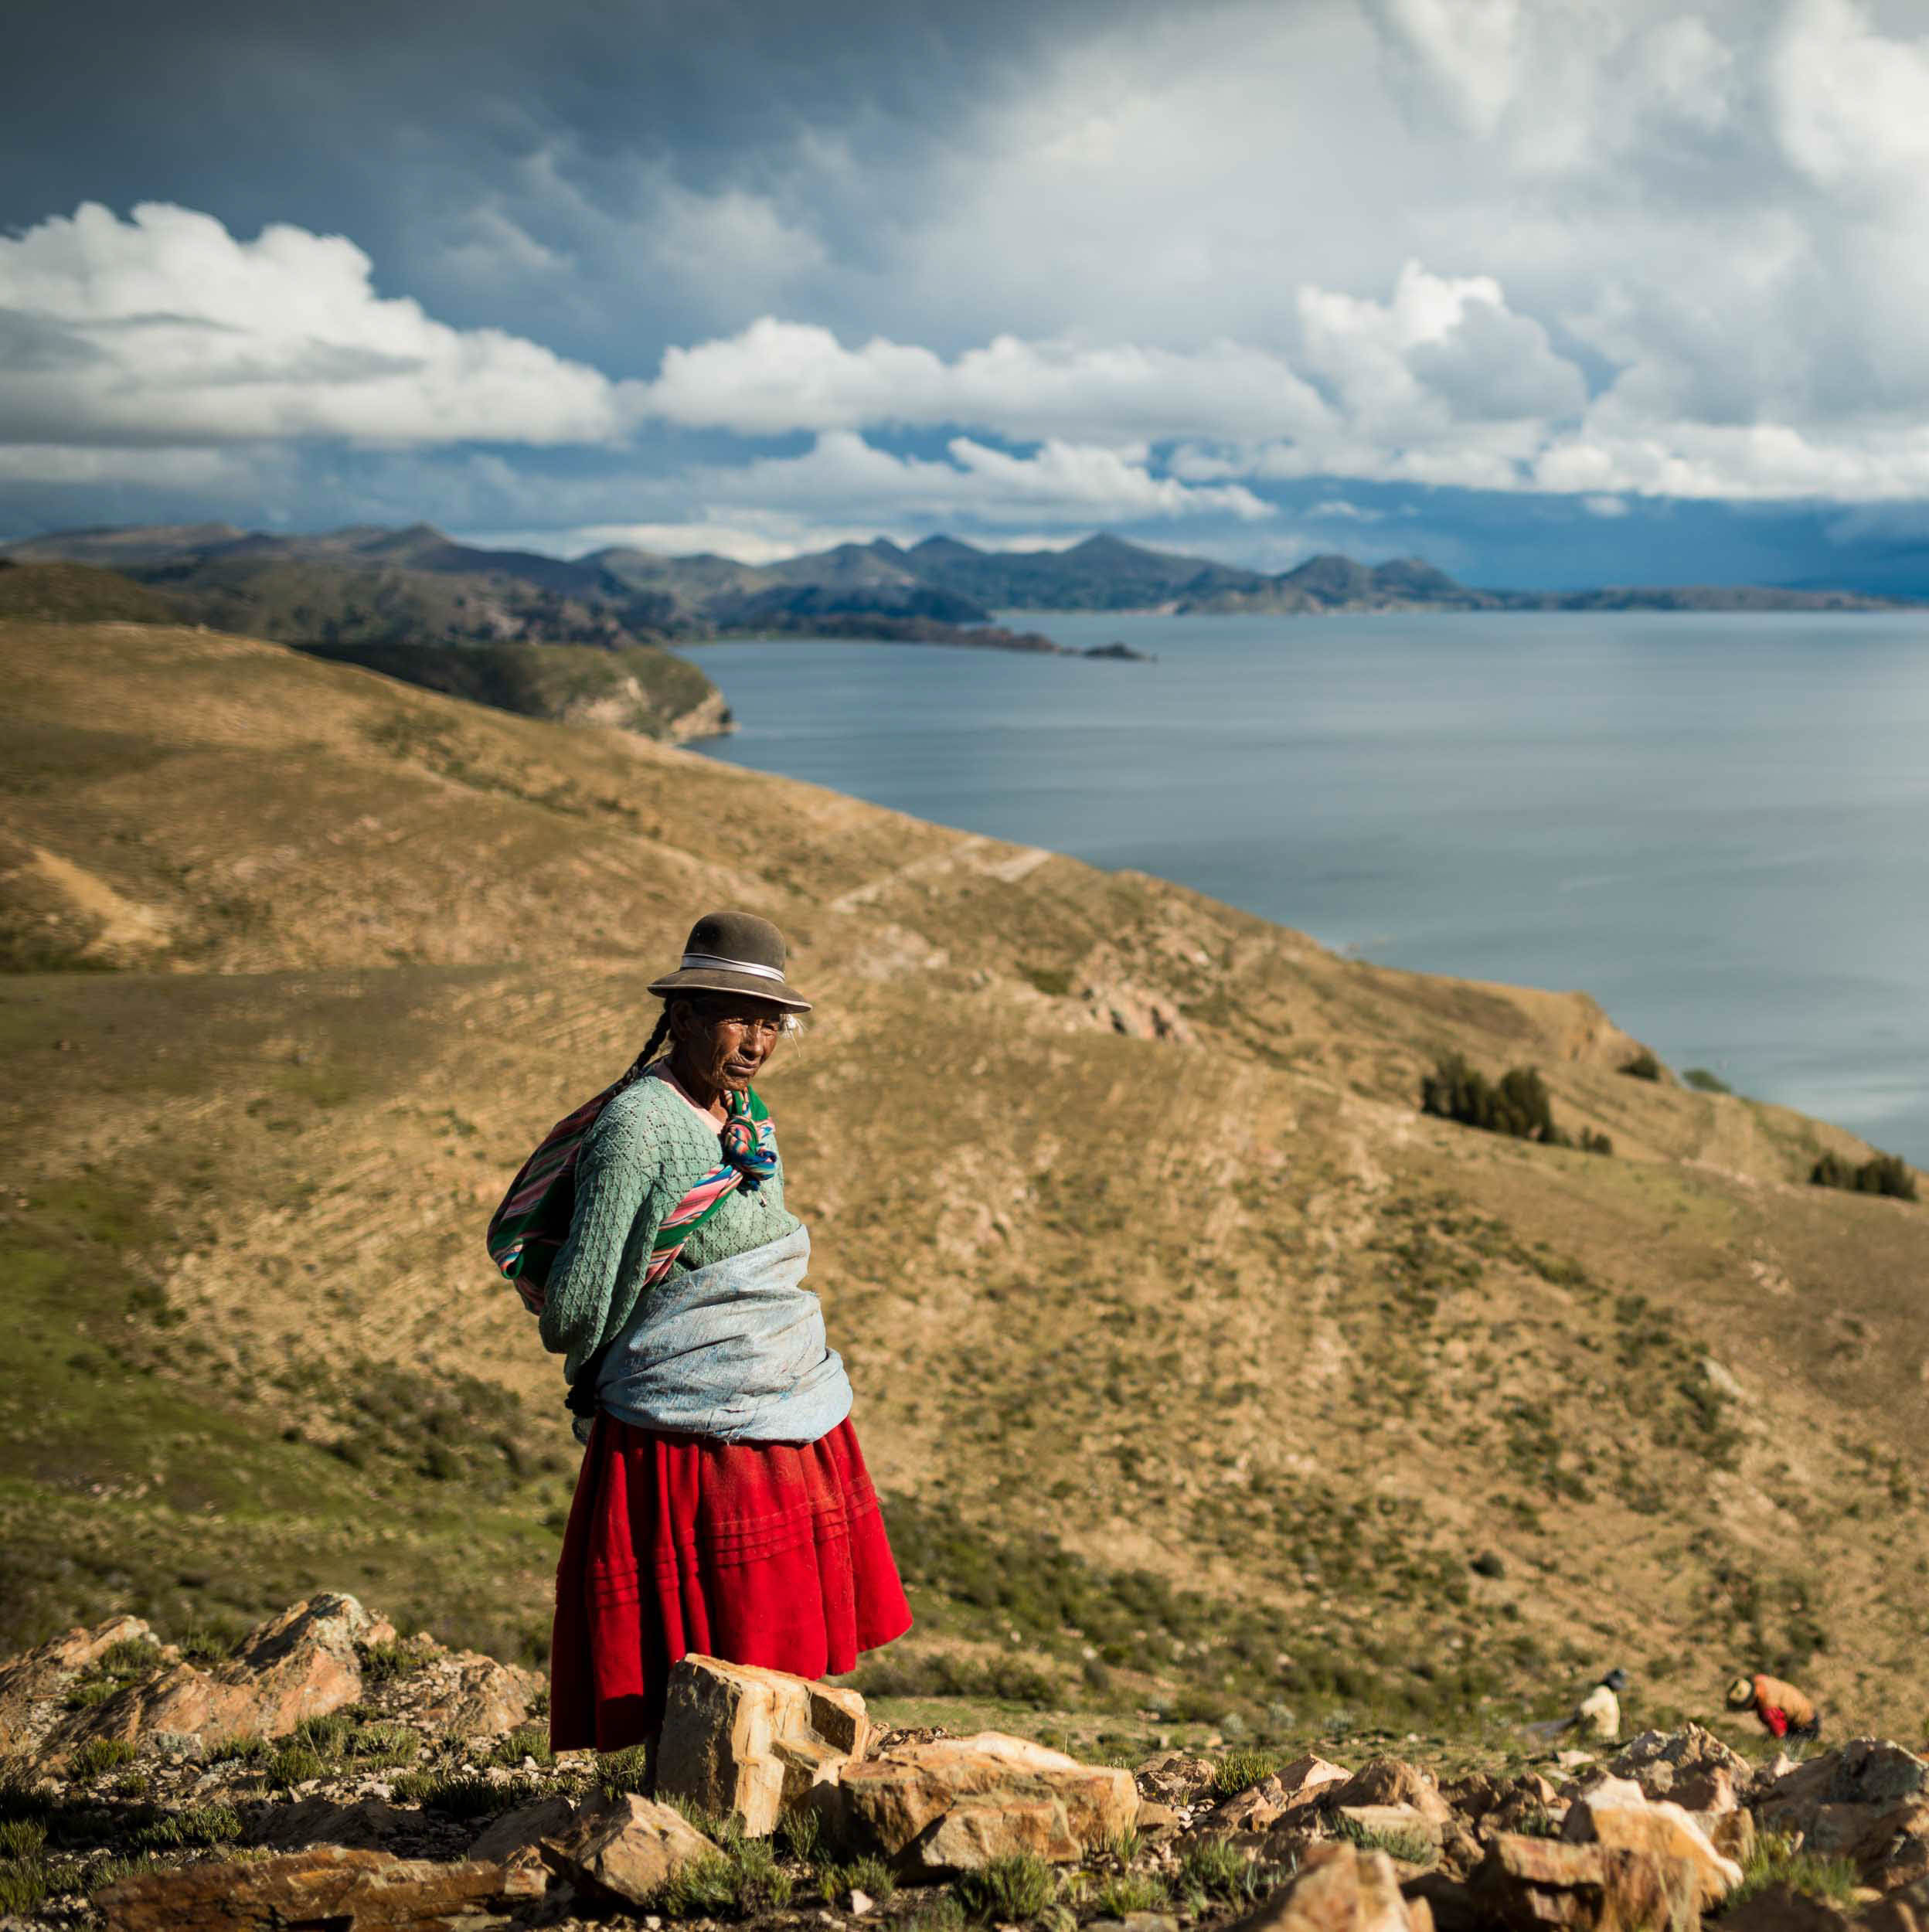 local-farmer-tradition-hat-rural-isla-sol-lake-titicaca-bolivia